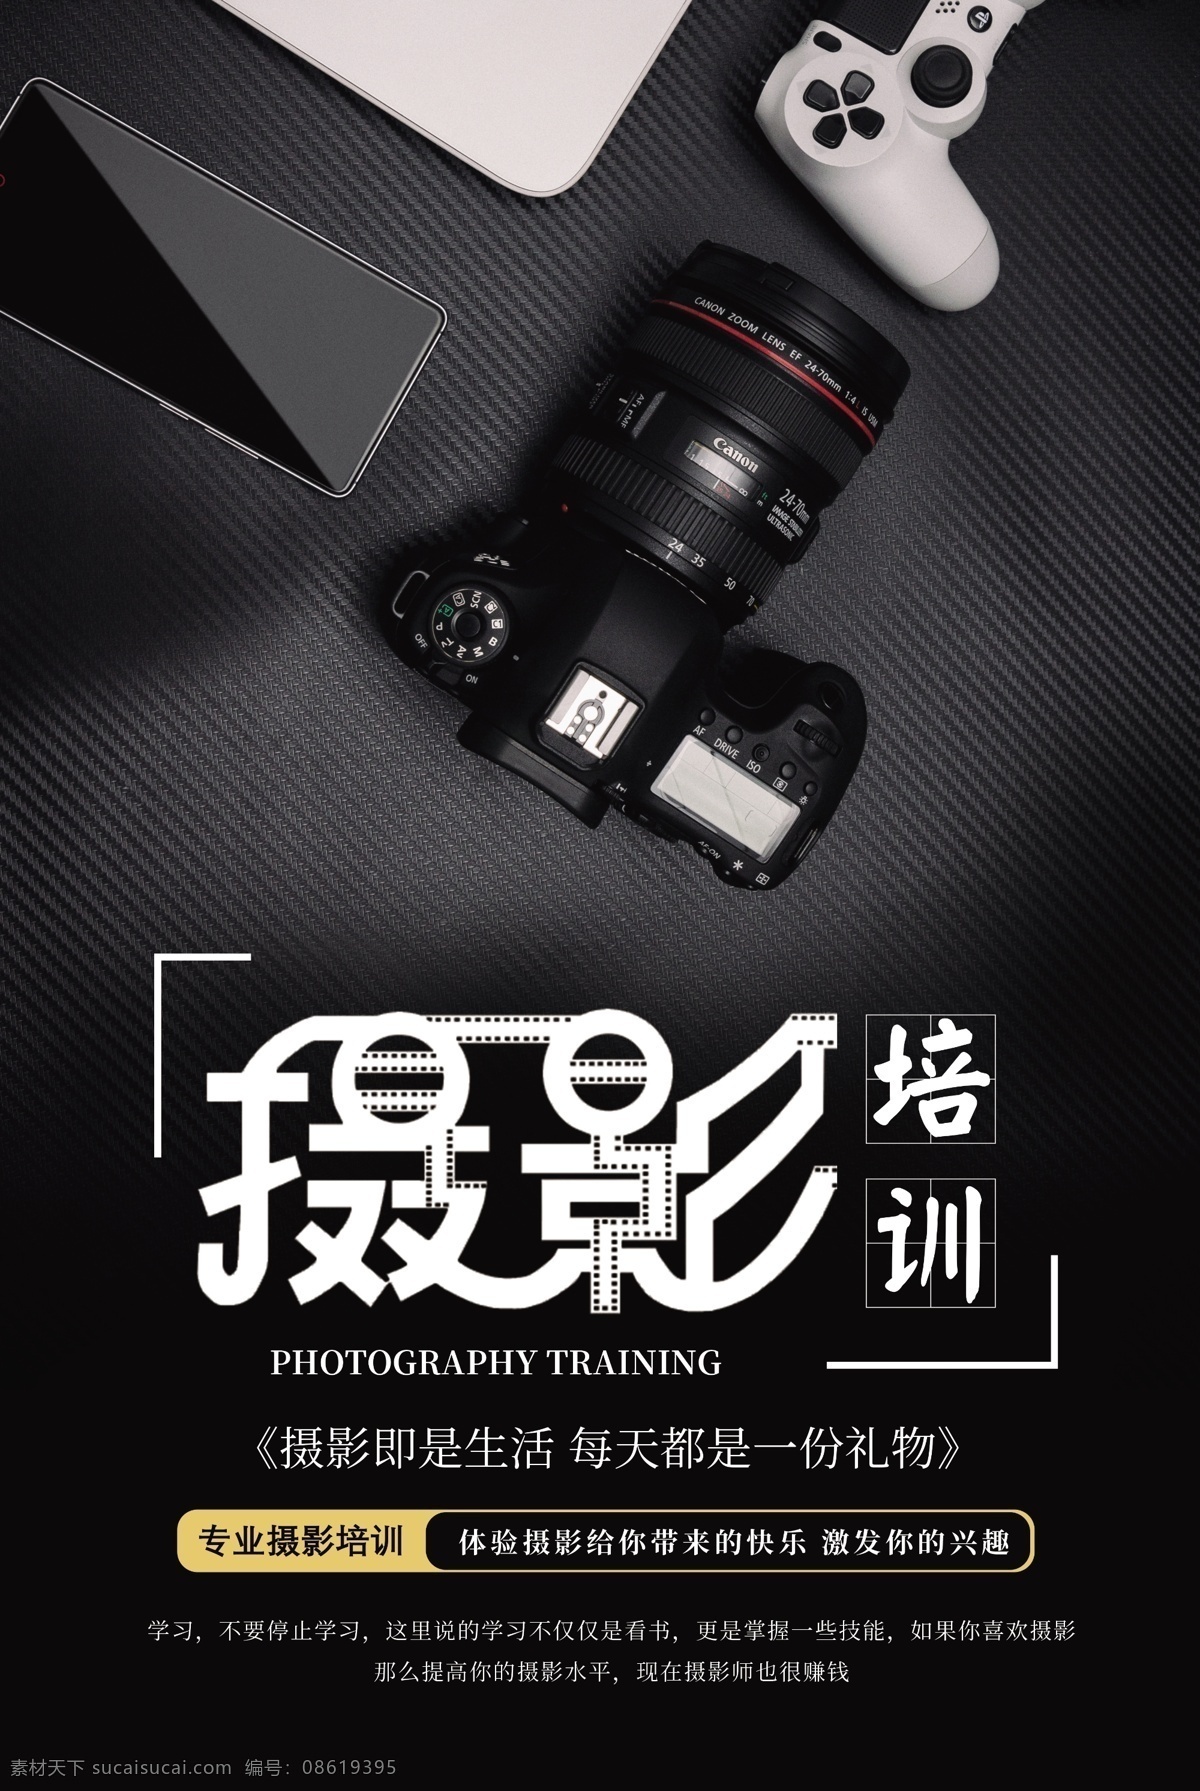 黑色 摄影培训 海报 培训 摄像 拍照 黑白 气质 简约 摄像机 摄影培训班 摄影班 培训班 教育培训 数码相机 照相